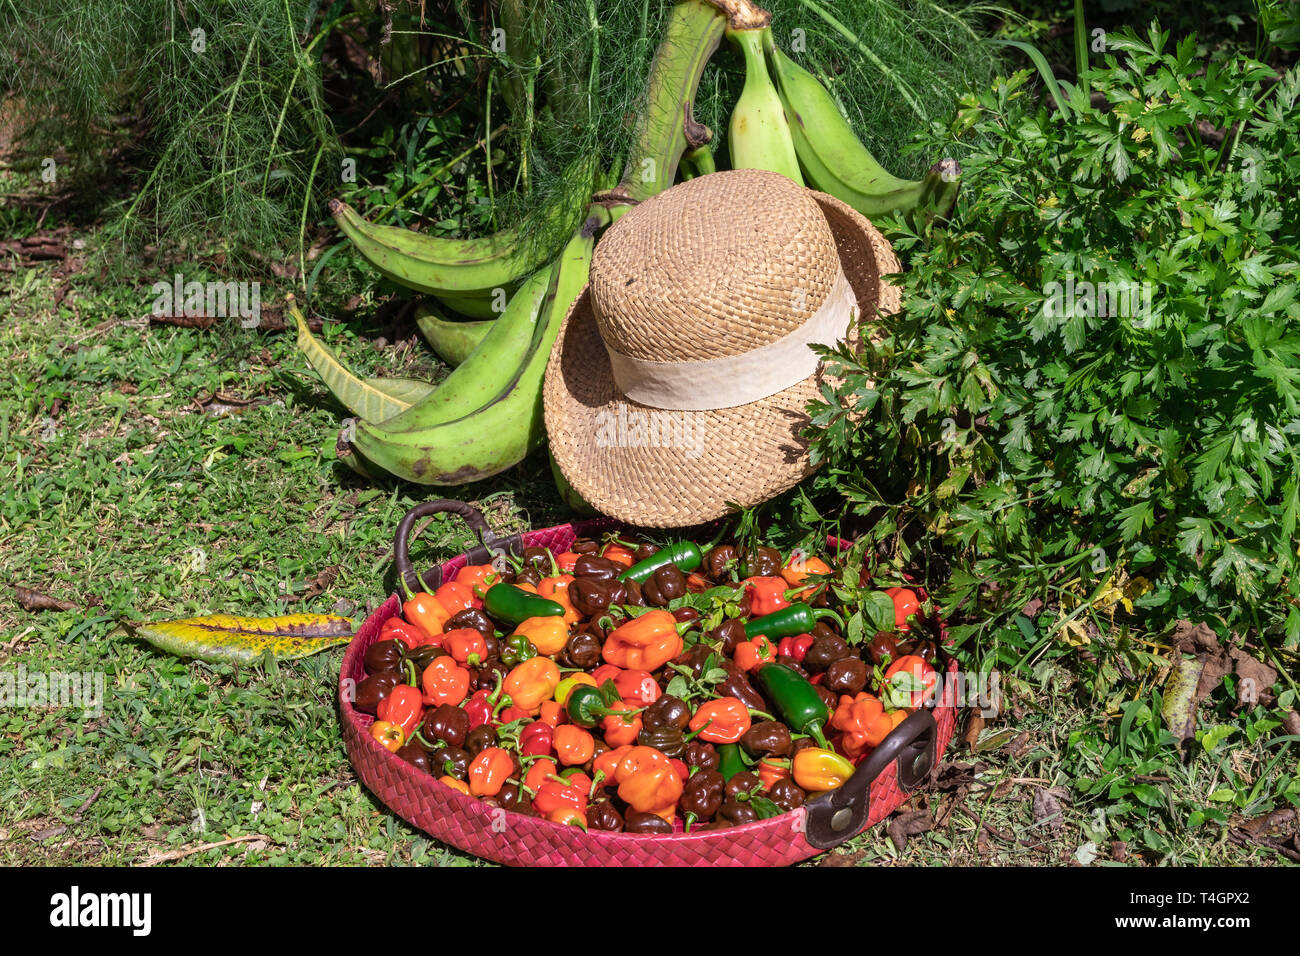 Vielfalt von tropischen Blumen und Pflanzen von der panamaischen Regenwaldes und das Hochland. Stockfoto